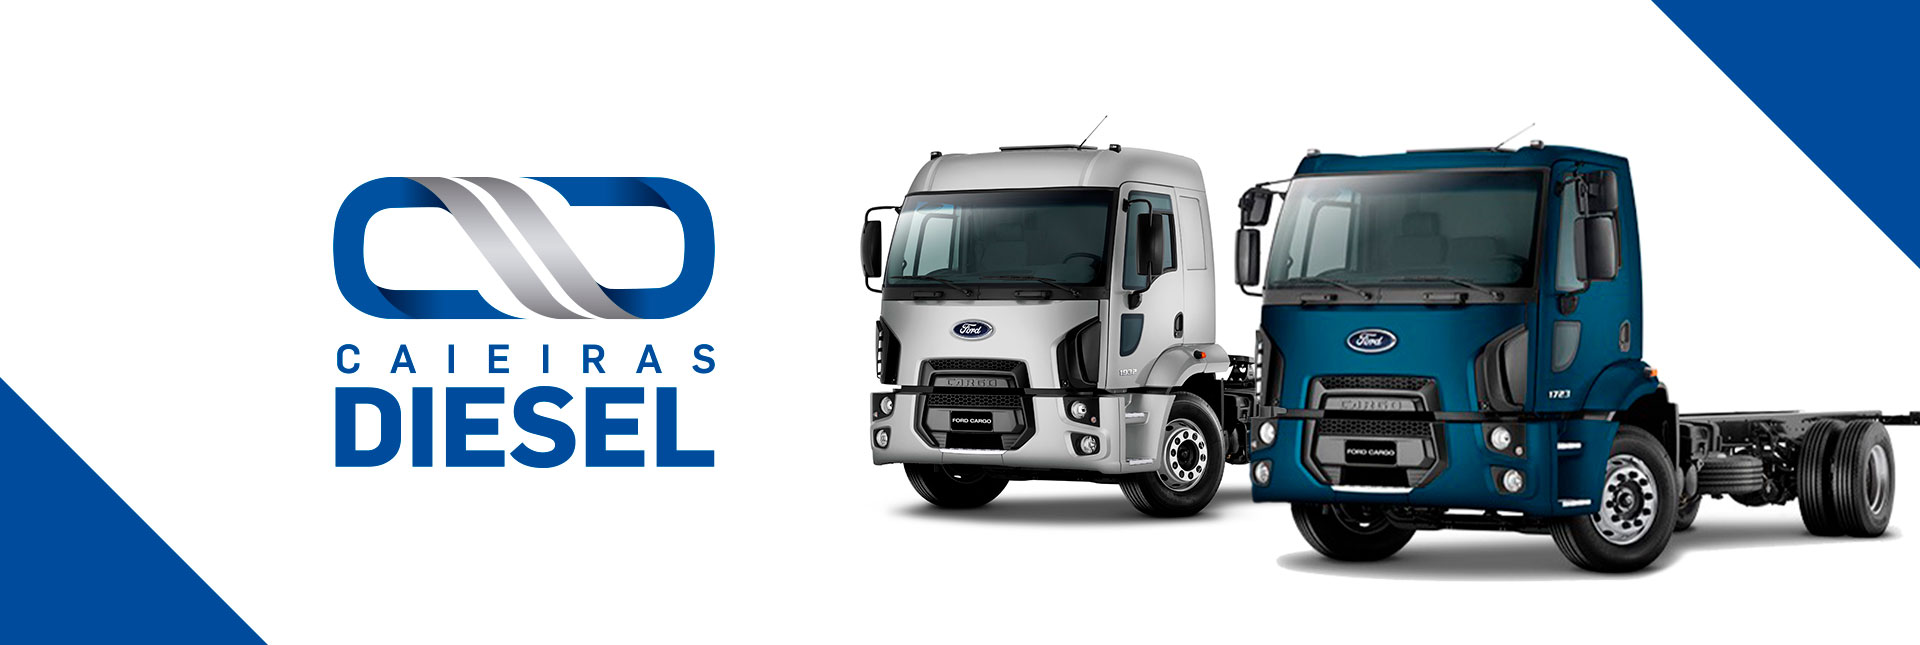 Caieiras Diesel - Peças para Caminhões, vans e utilitários